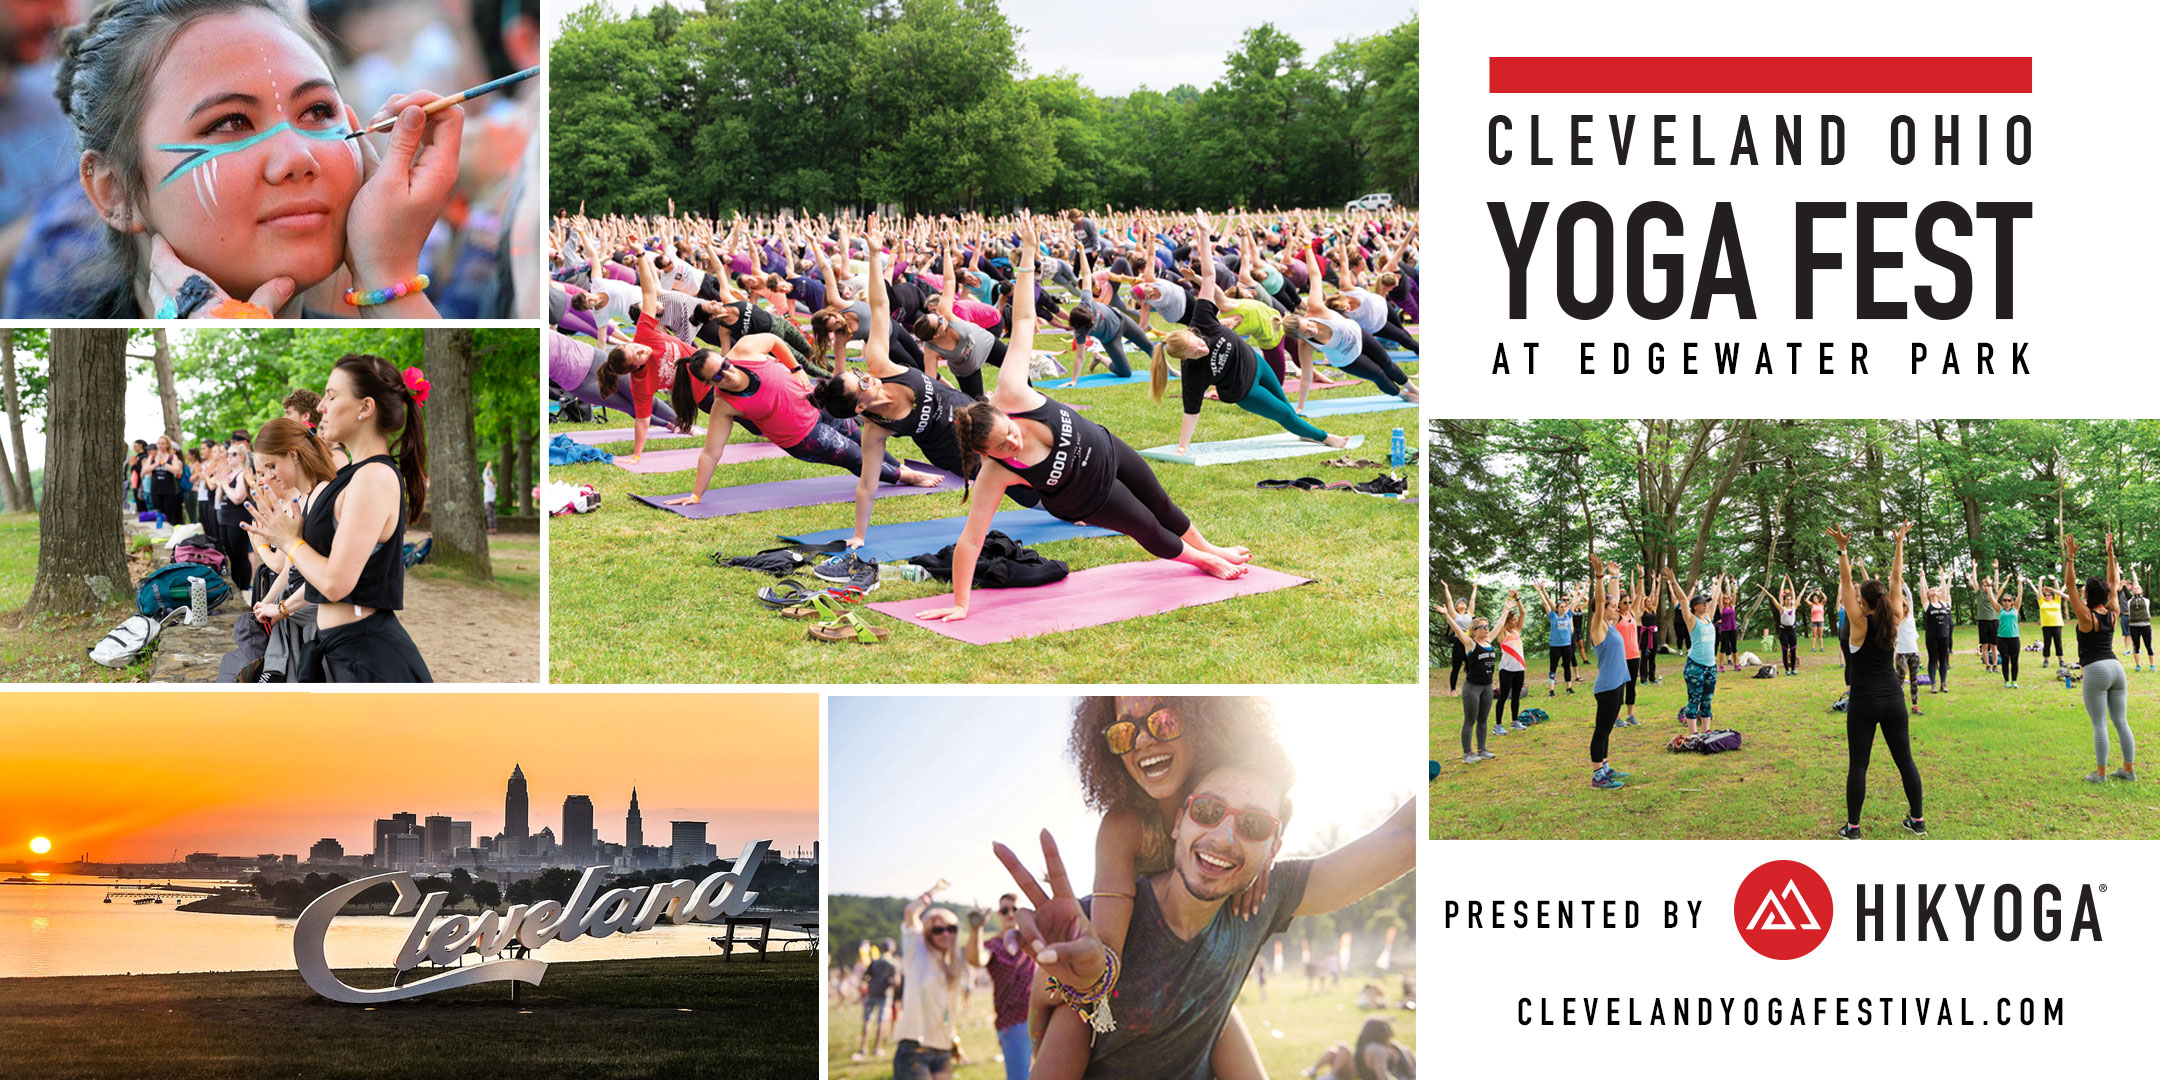 Cleveland Ohio Yoga Fest Live